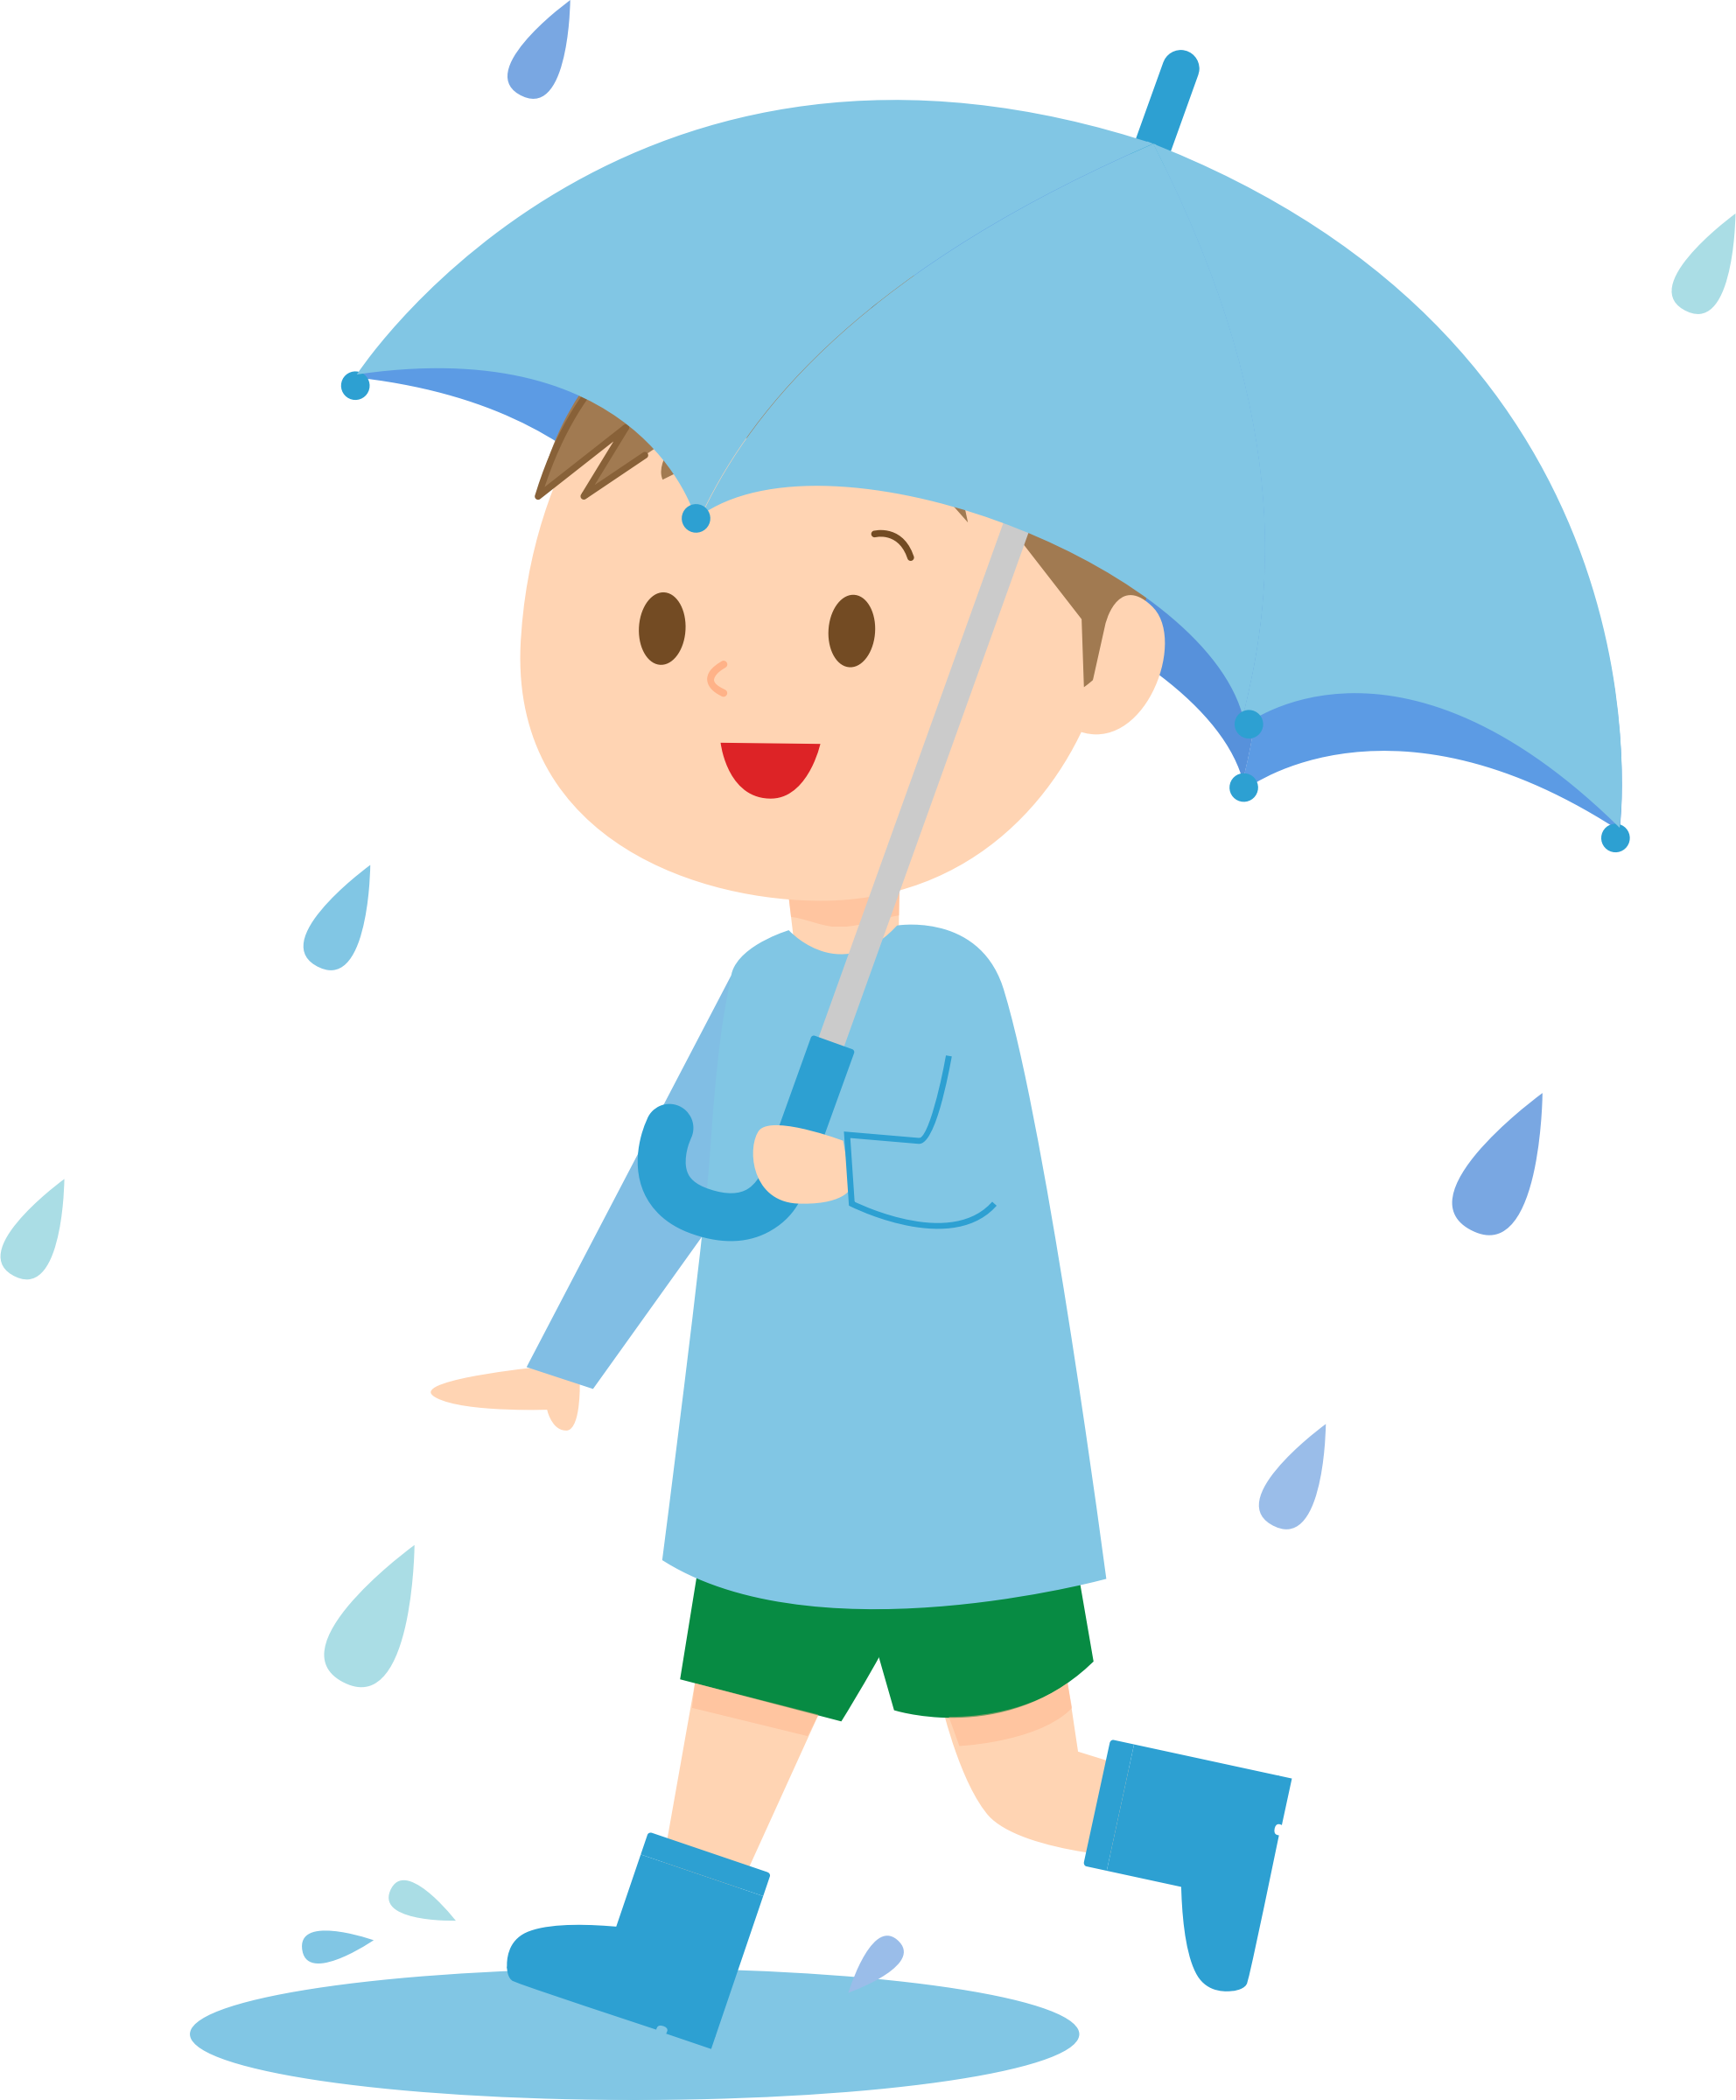 You take an umbrella today. Мальчик под зонтиком. Мальчик с зонтом. Мальчик под зонтом. Дети под зонтом.